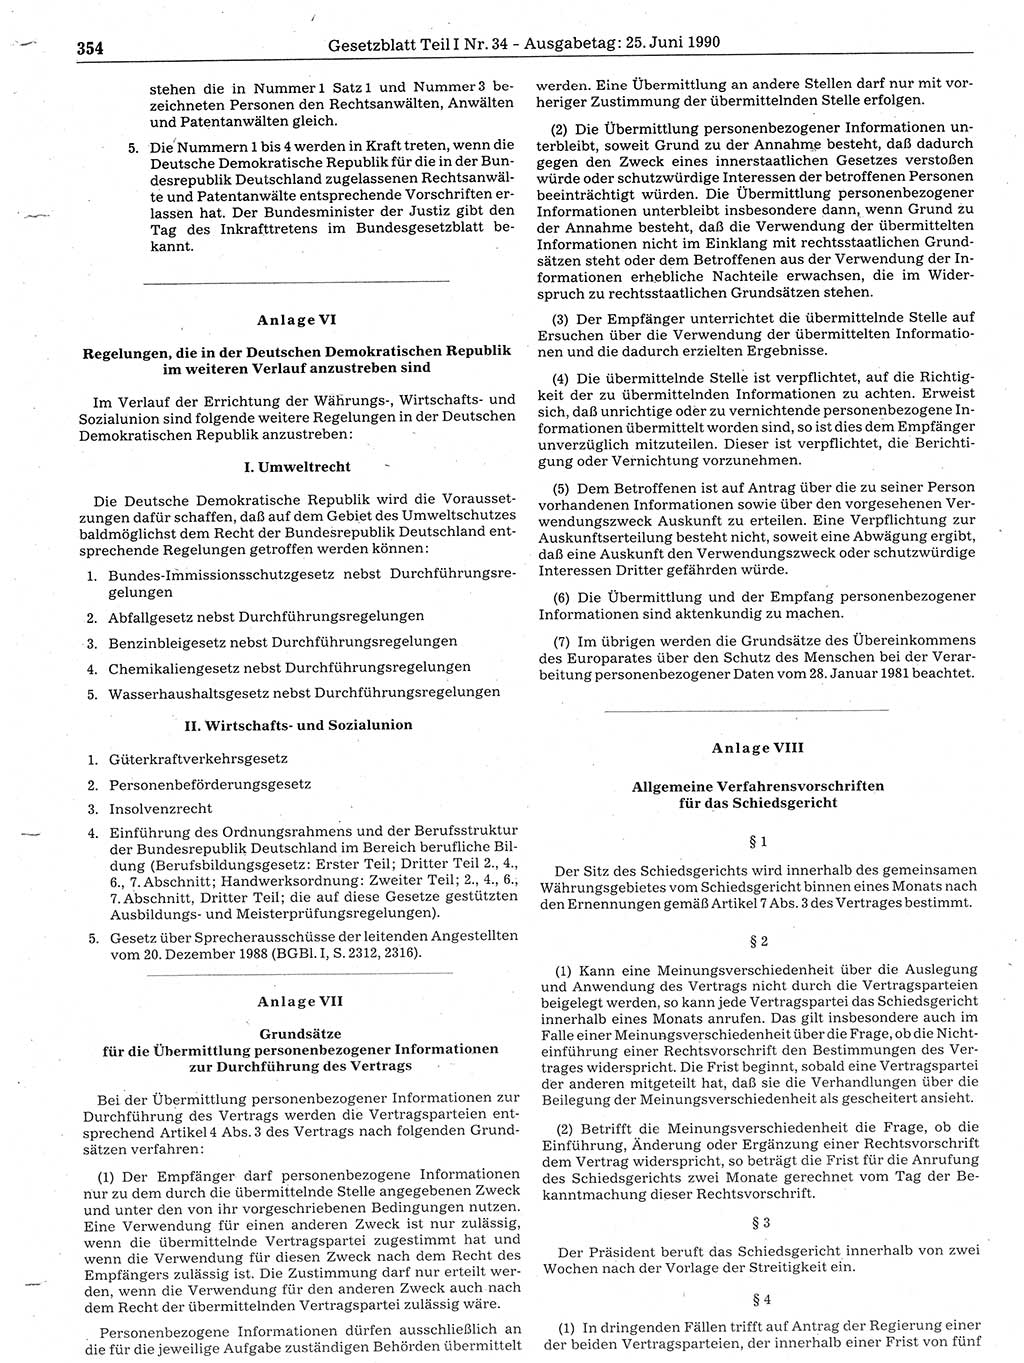 Gesetzblatt (GBl.) der Deutschen Demokratischen Republik (DDR) Teil Ⅰ 1990, Seite 354 (GBl. DDR Ⅰ 1990, S. 354)